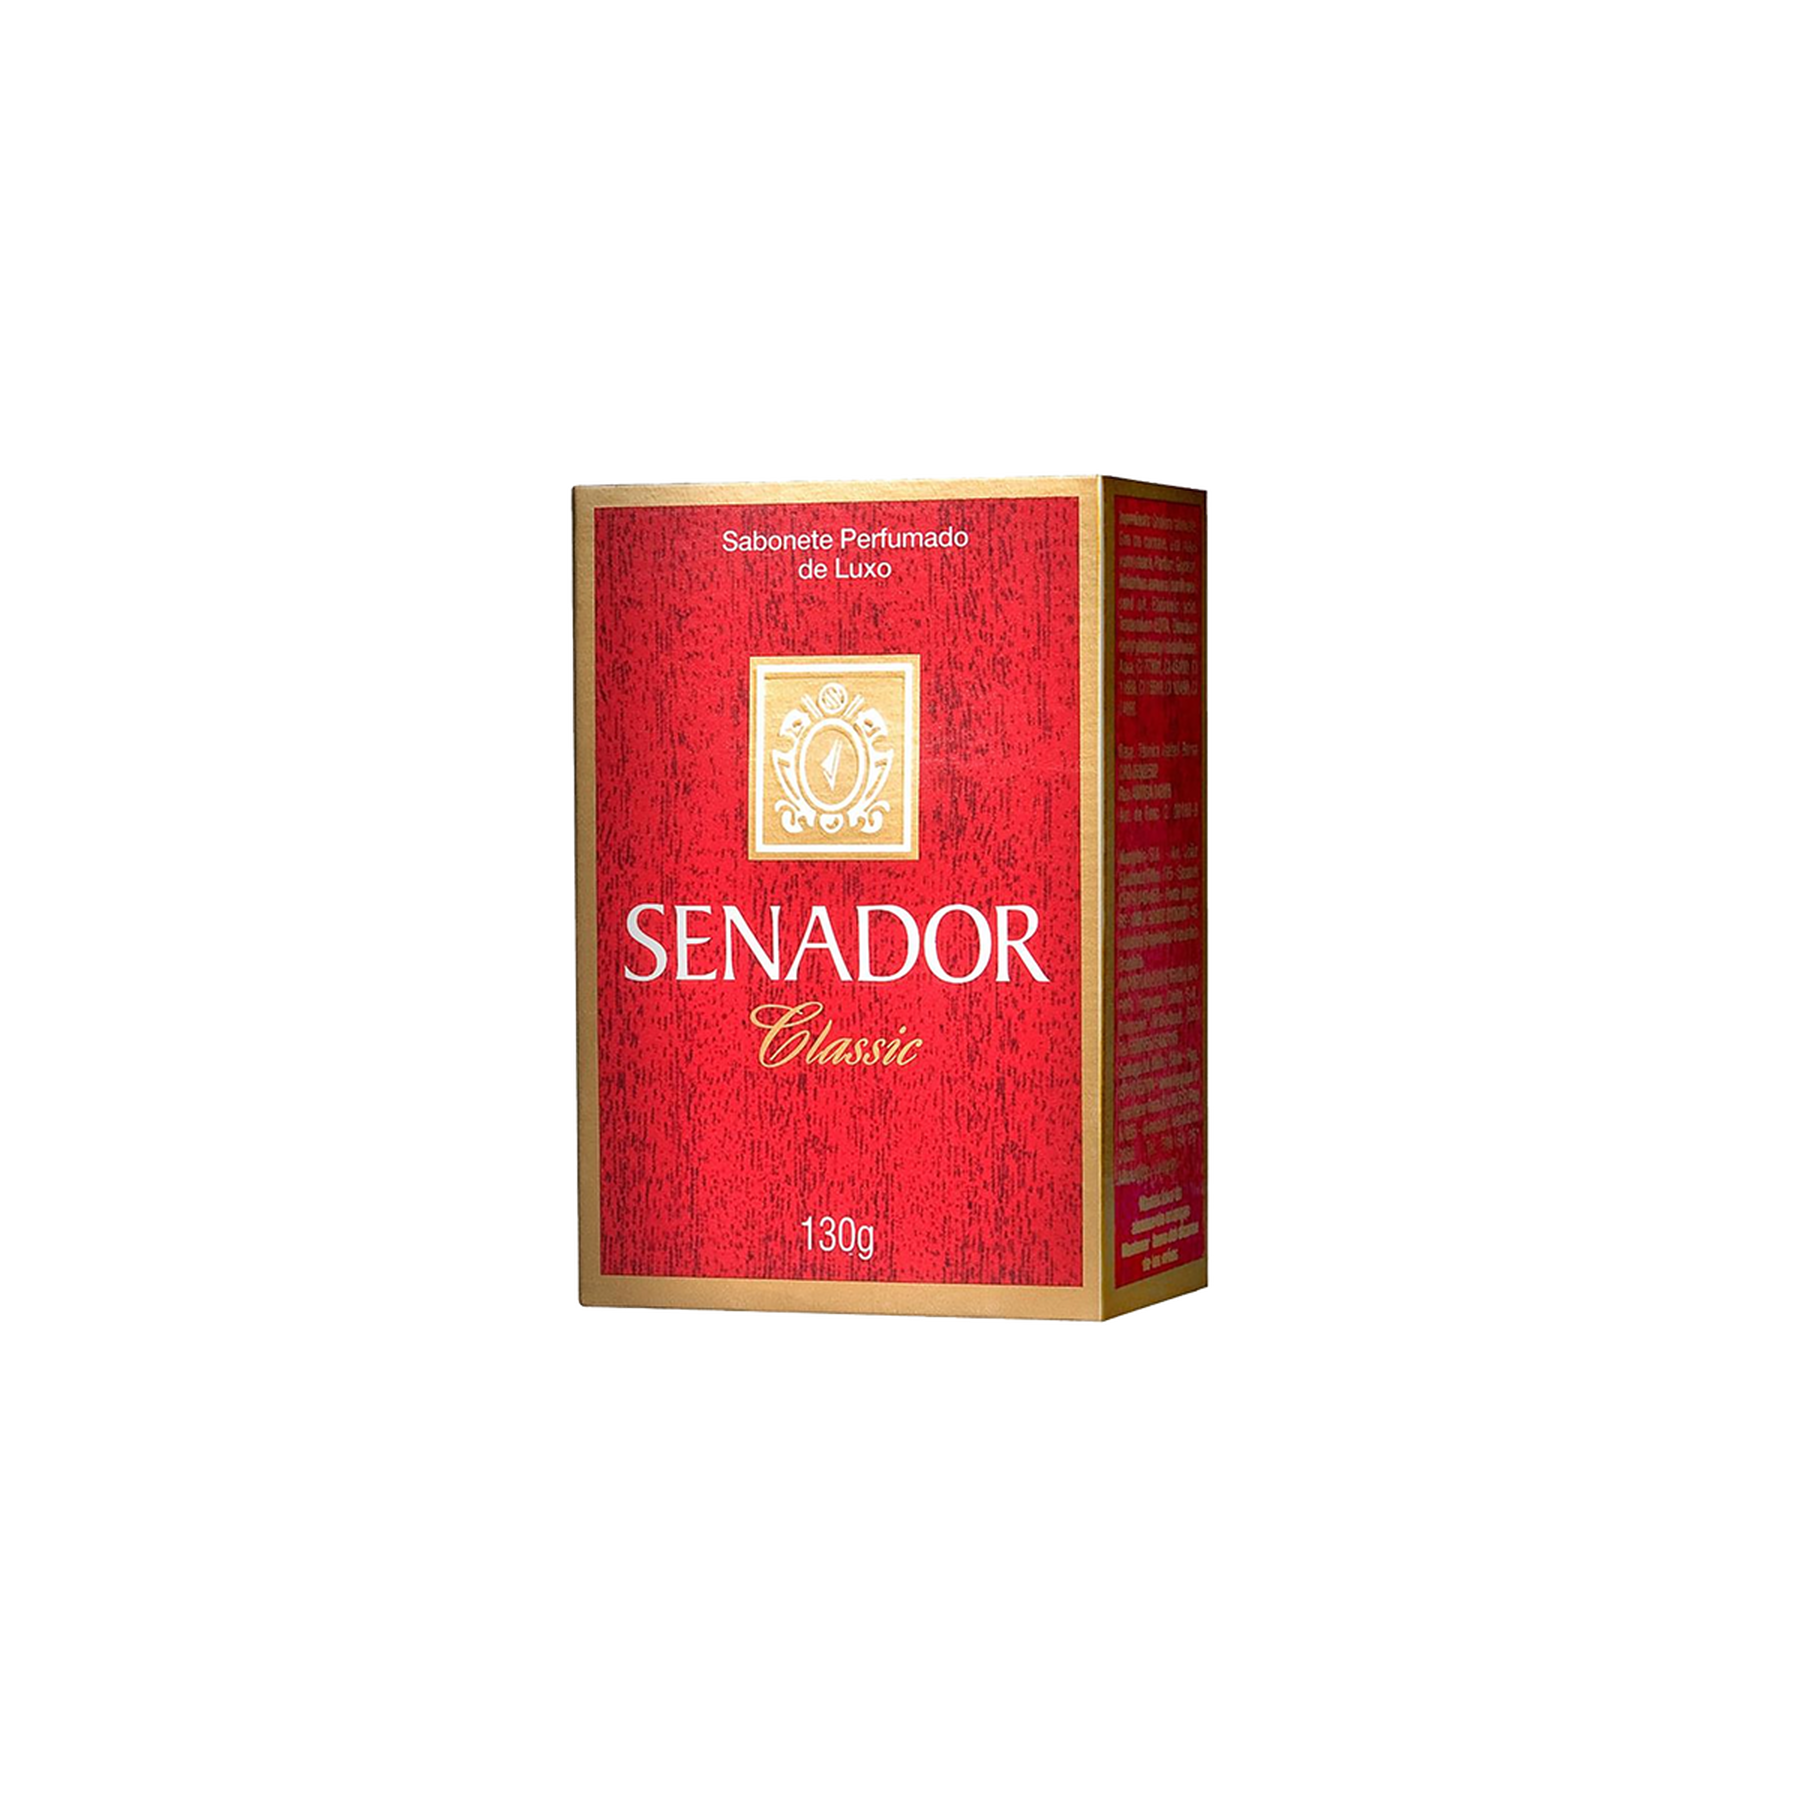 Sabonete Senador Classic 130g